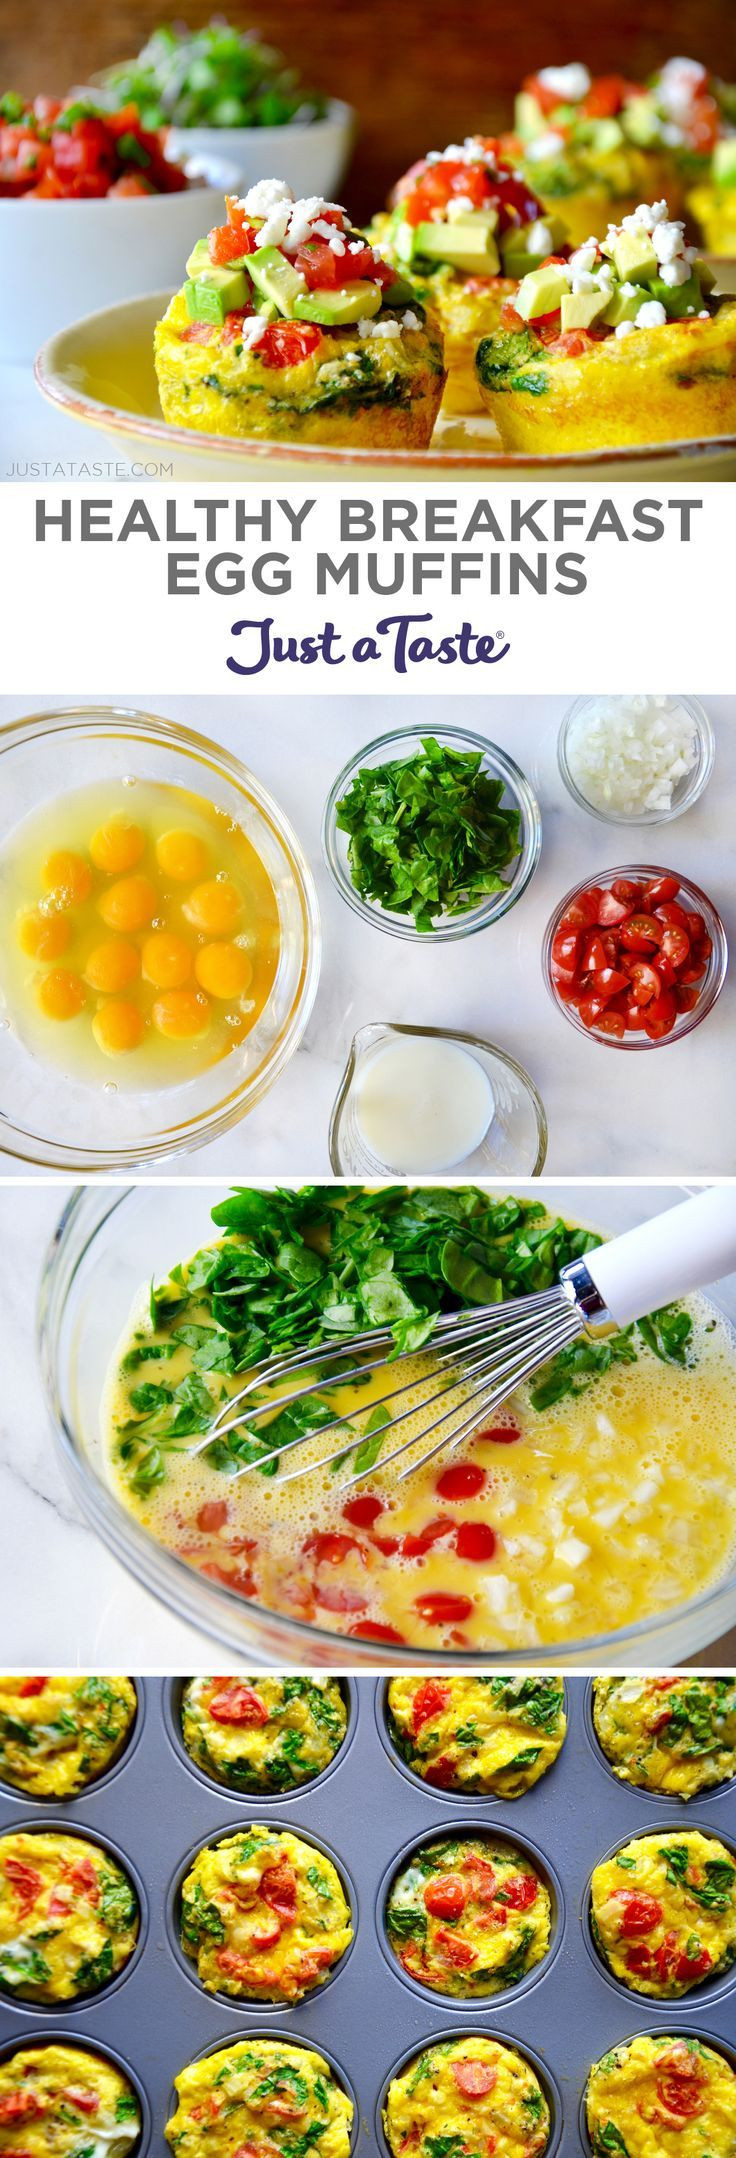 Healthy Breakfast Meals
 1000 ideas about Healthy Breakfasts on Pinterest